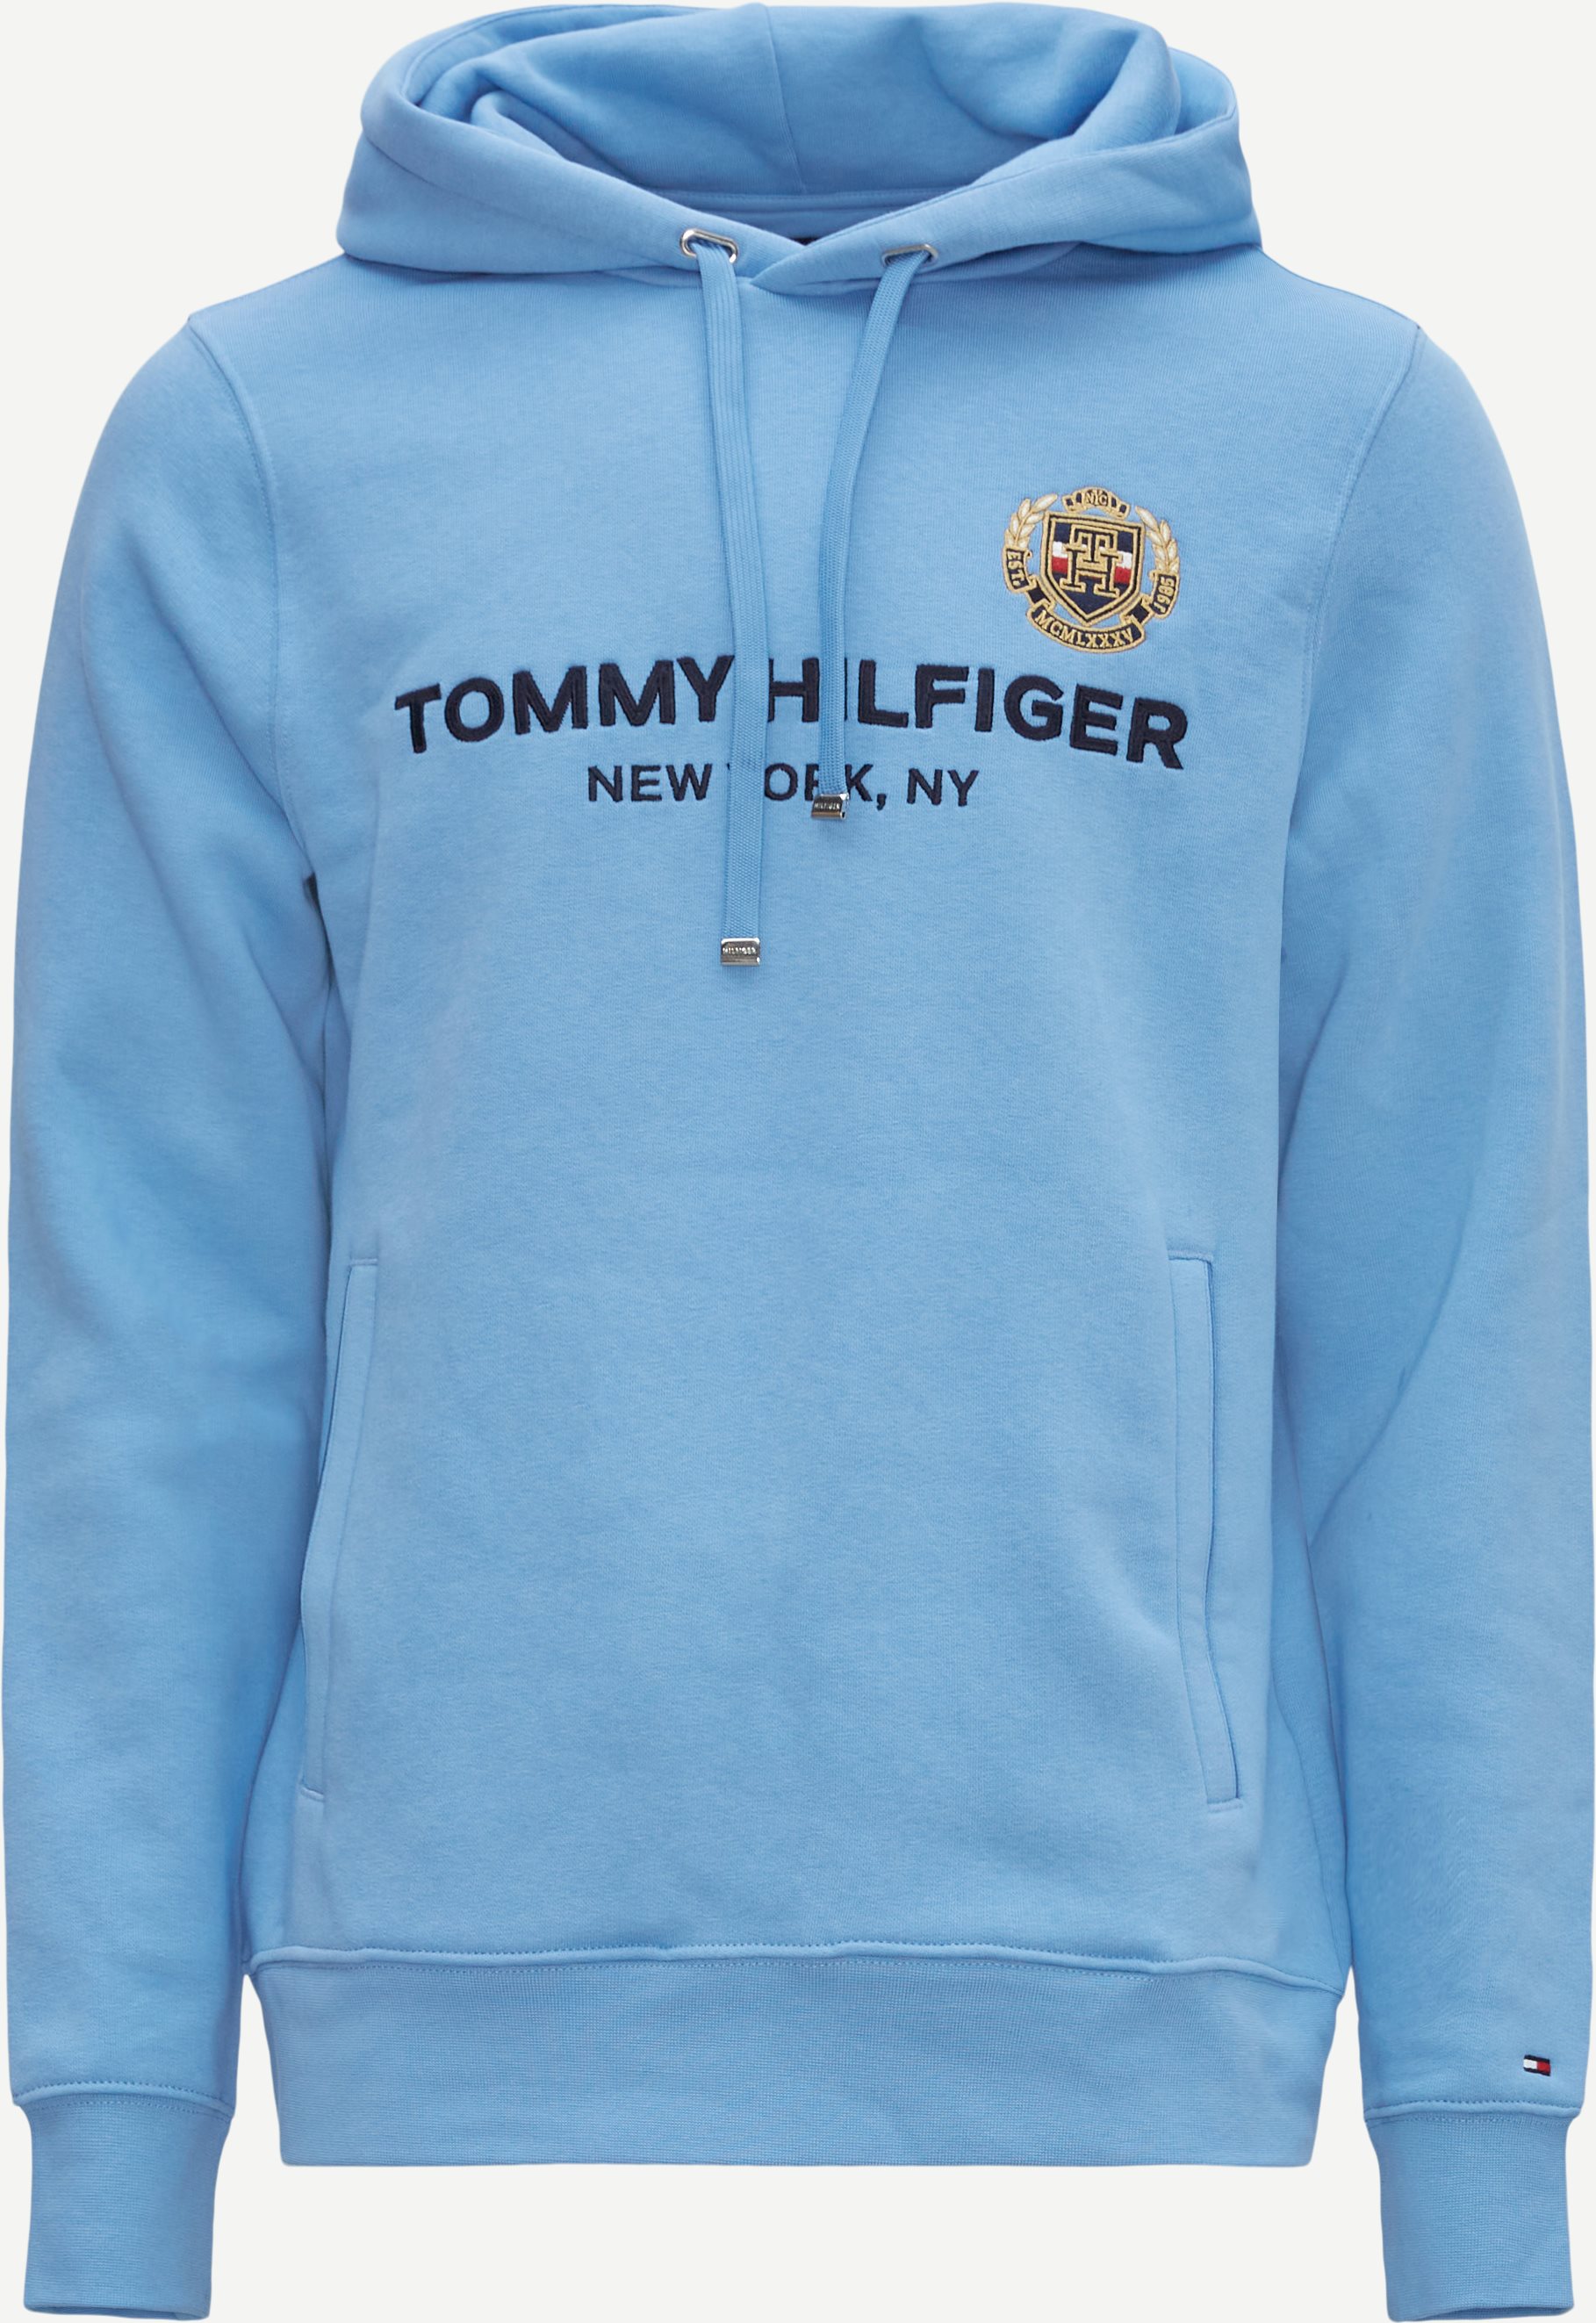 Tommy Hilfiger Sweatshirts 29332 ICON STACK CREST HOODIE Blå